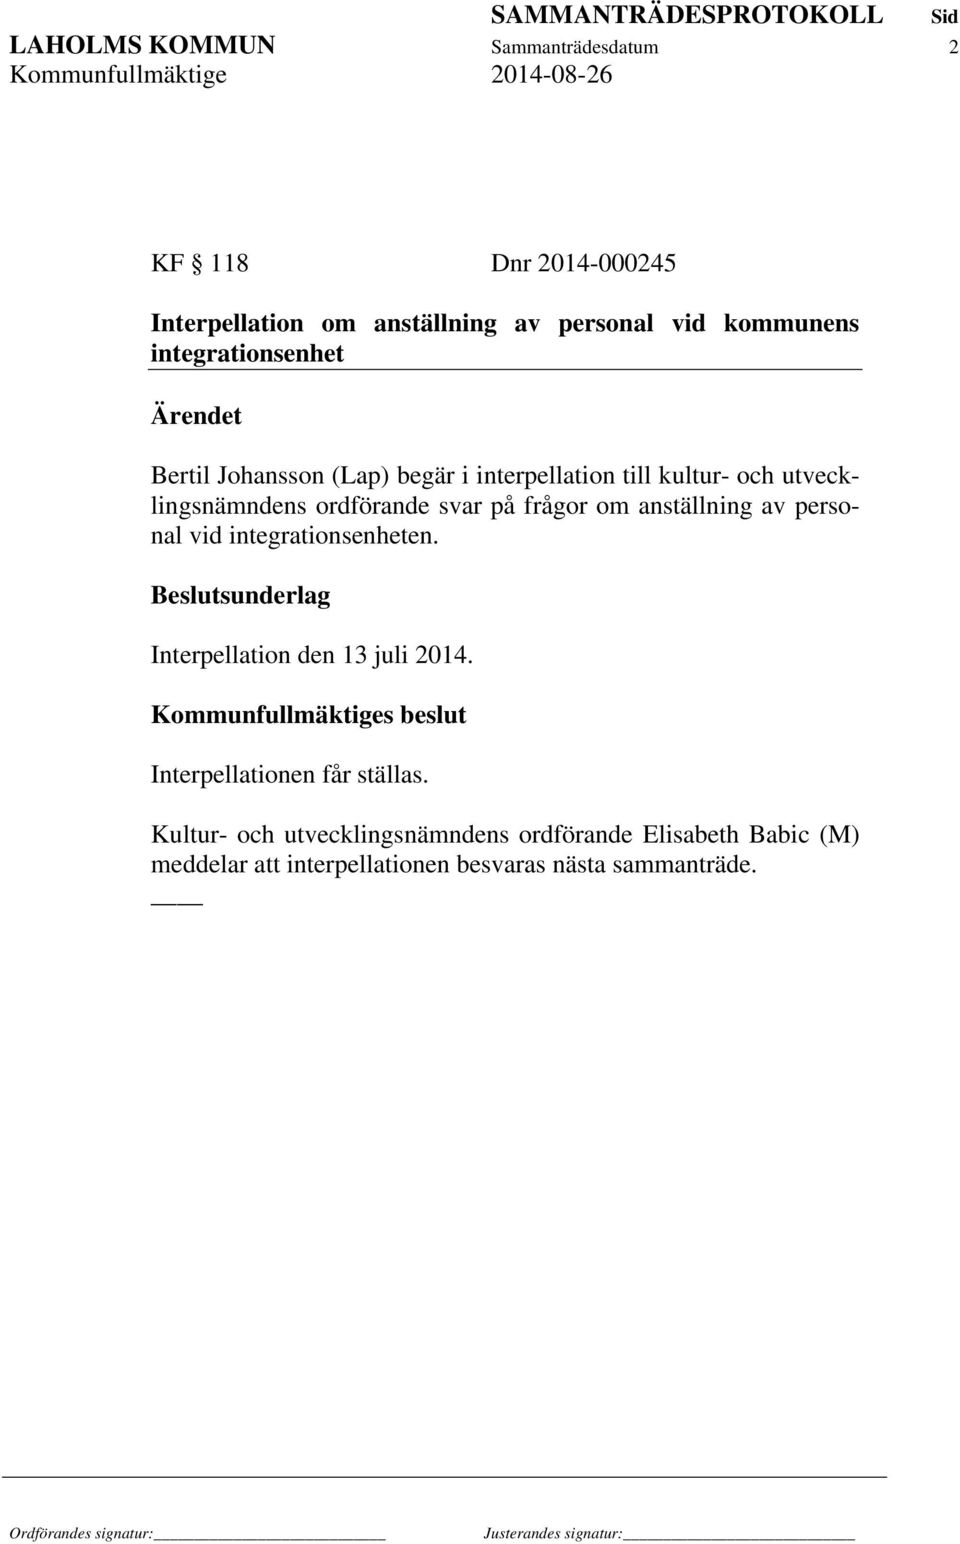 frågor om anställning av personal vid integrationsenheten. Interpellation den 13 juli 2014.